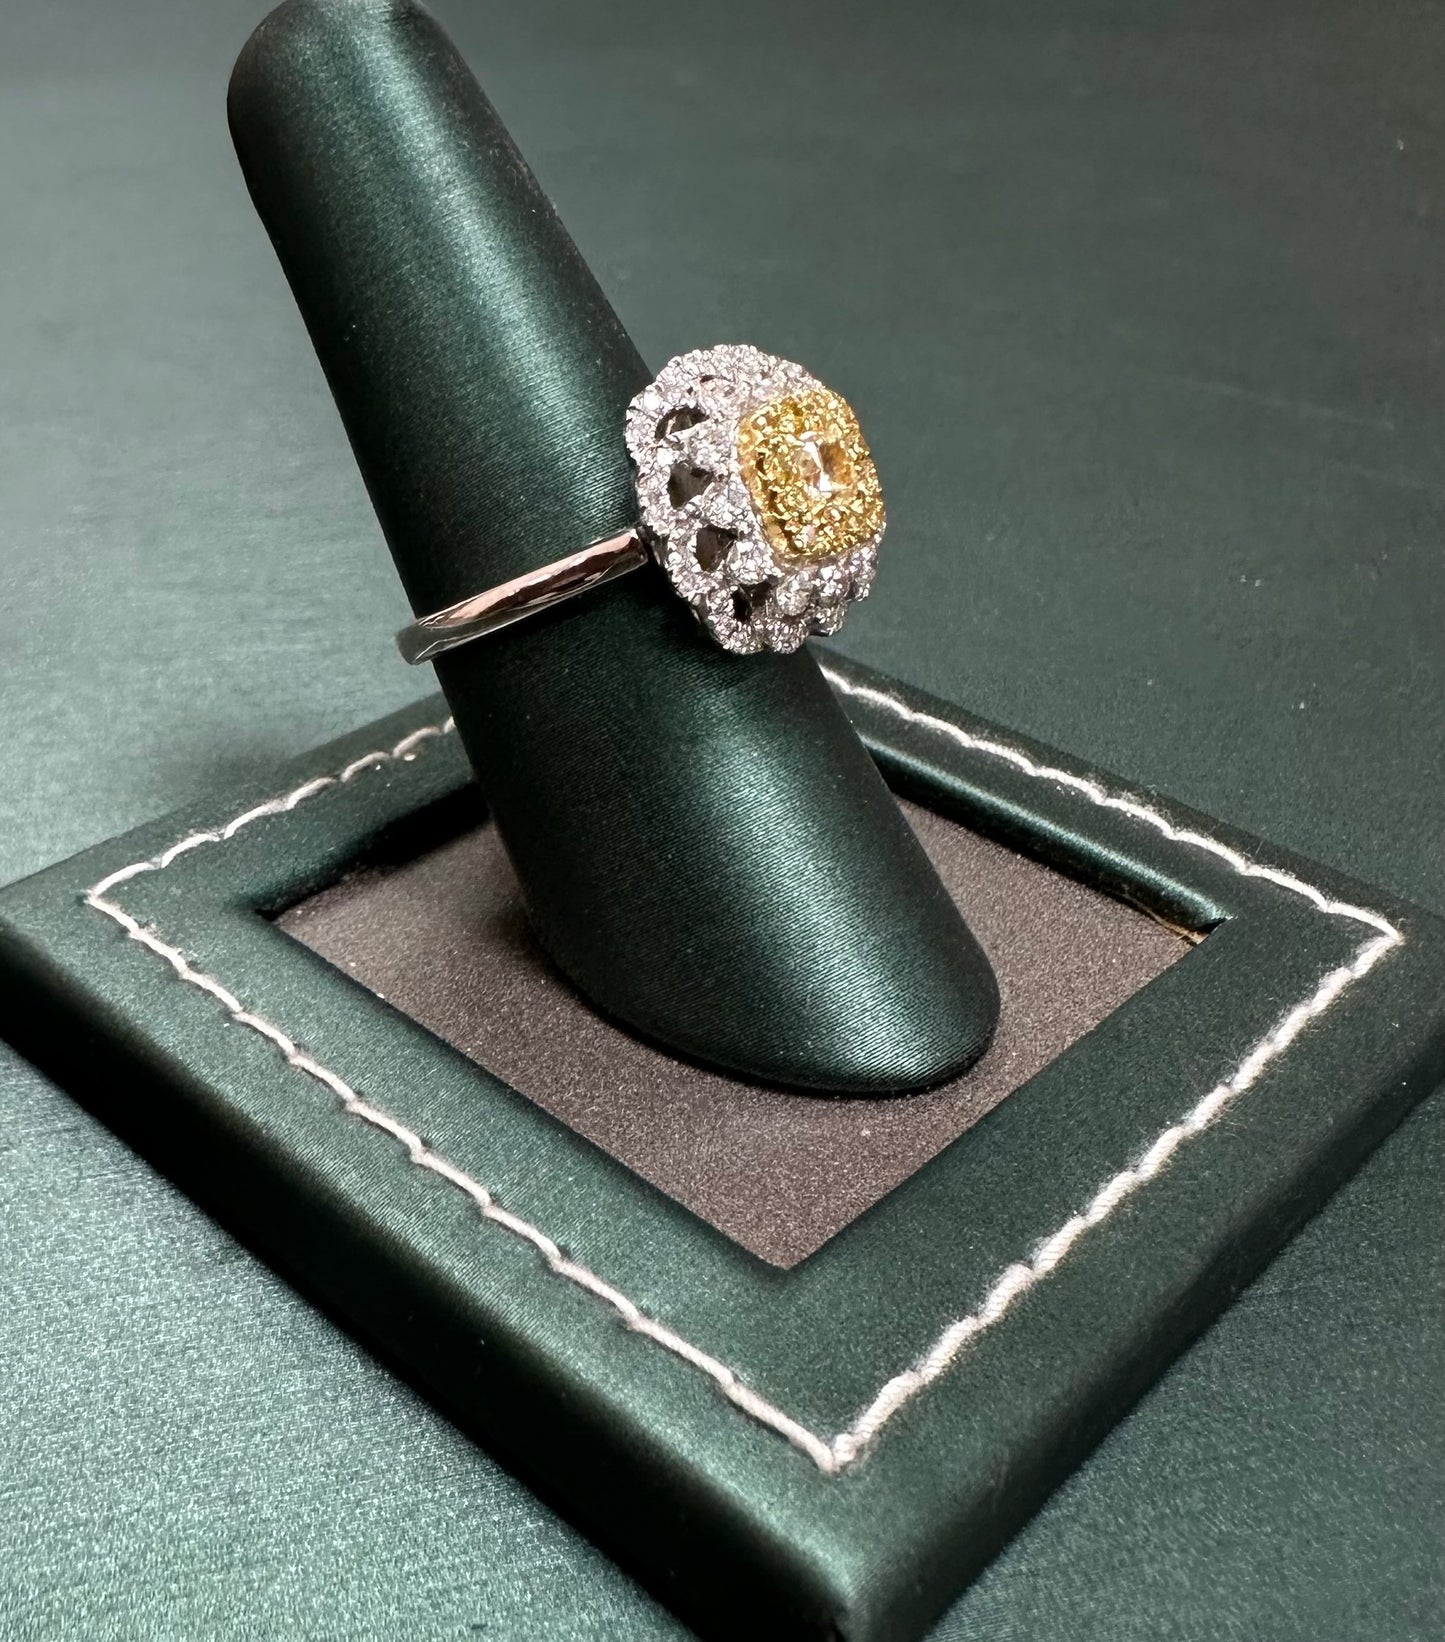 The Daisy diamond ring